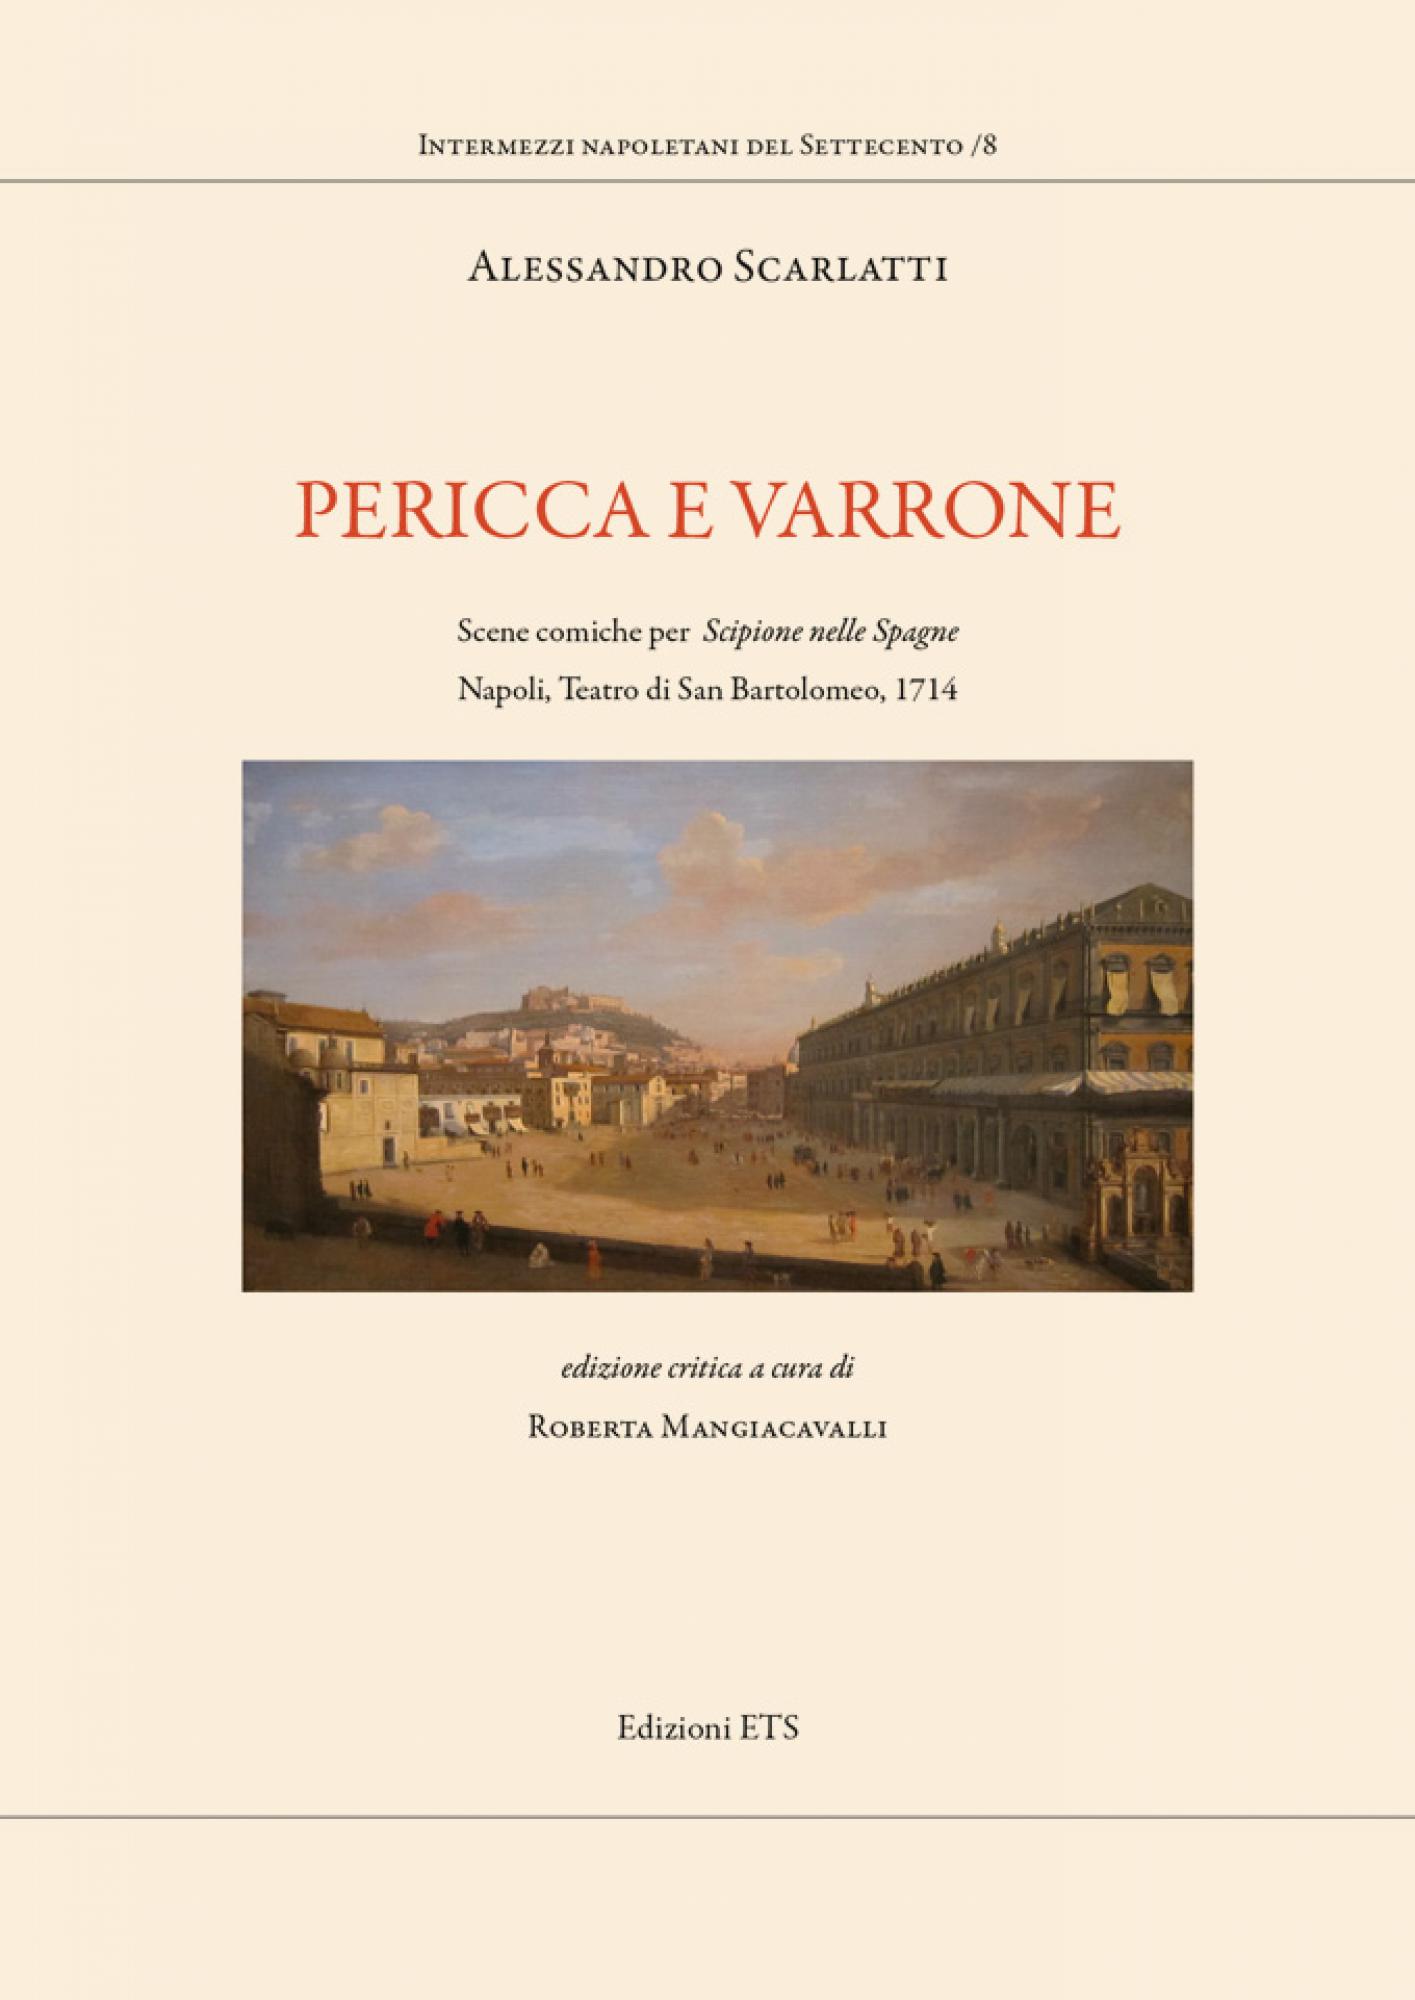 Pericca e Varrone.Scene comiche per “Scipione nelle Spagne”. Napoli, Teatro di San Bartolomeo, 1714